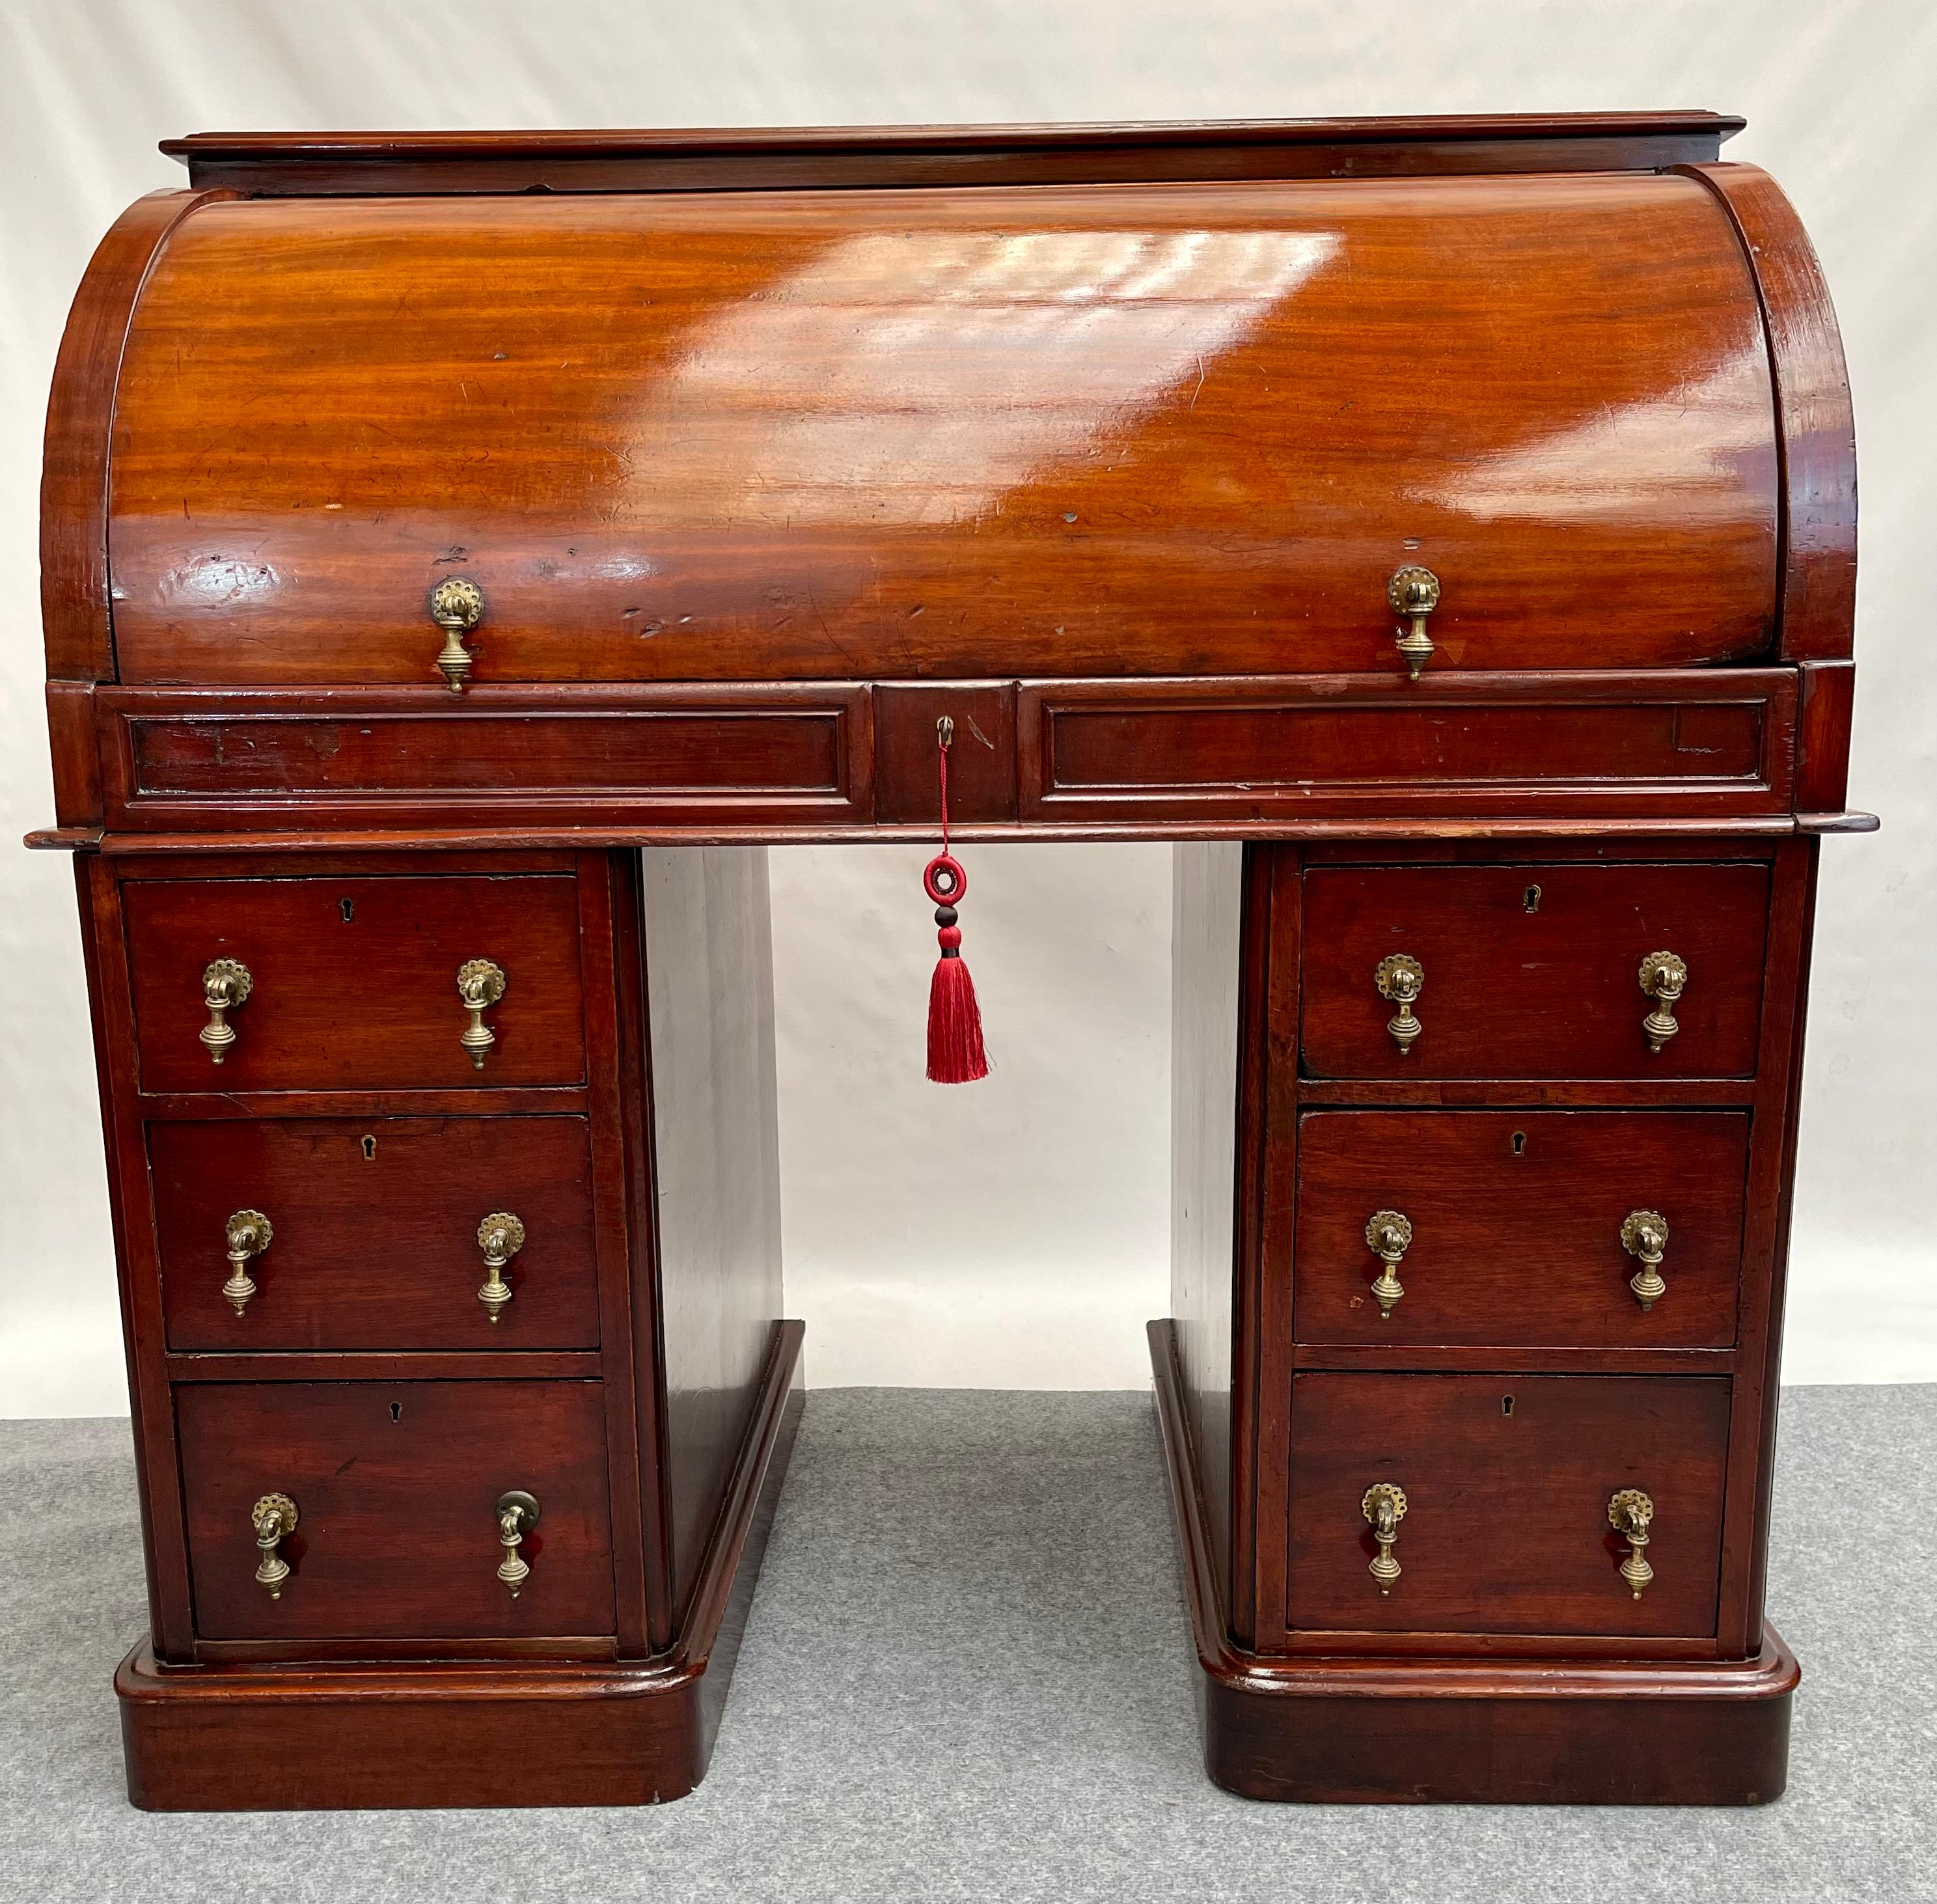 Entdecken Sie den zeitlosen Charme eines viktorianischen Schreibtisches, der 1830 in England gefertigt wurde. Dieser elegante Schreibtisch aus kubanischem Mahagoni ist ein echtes Zeugnis der handwerklichen Qualität und des raffinierten Stils der